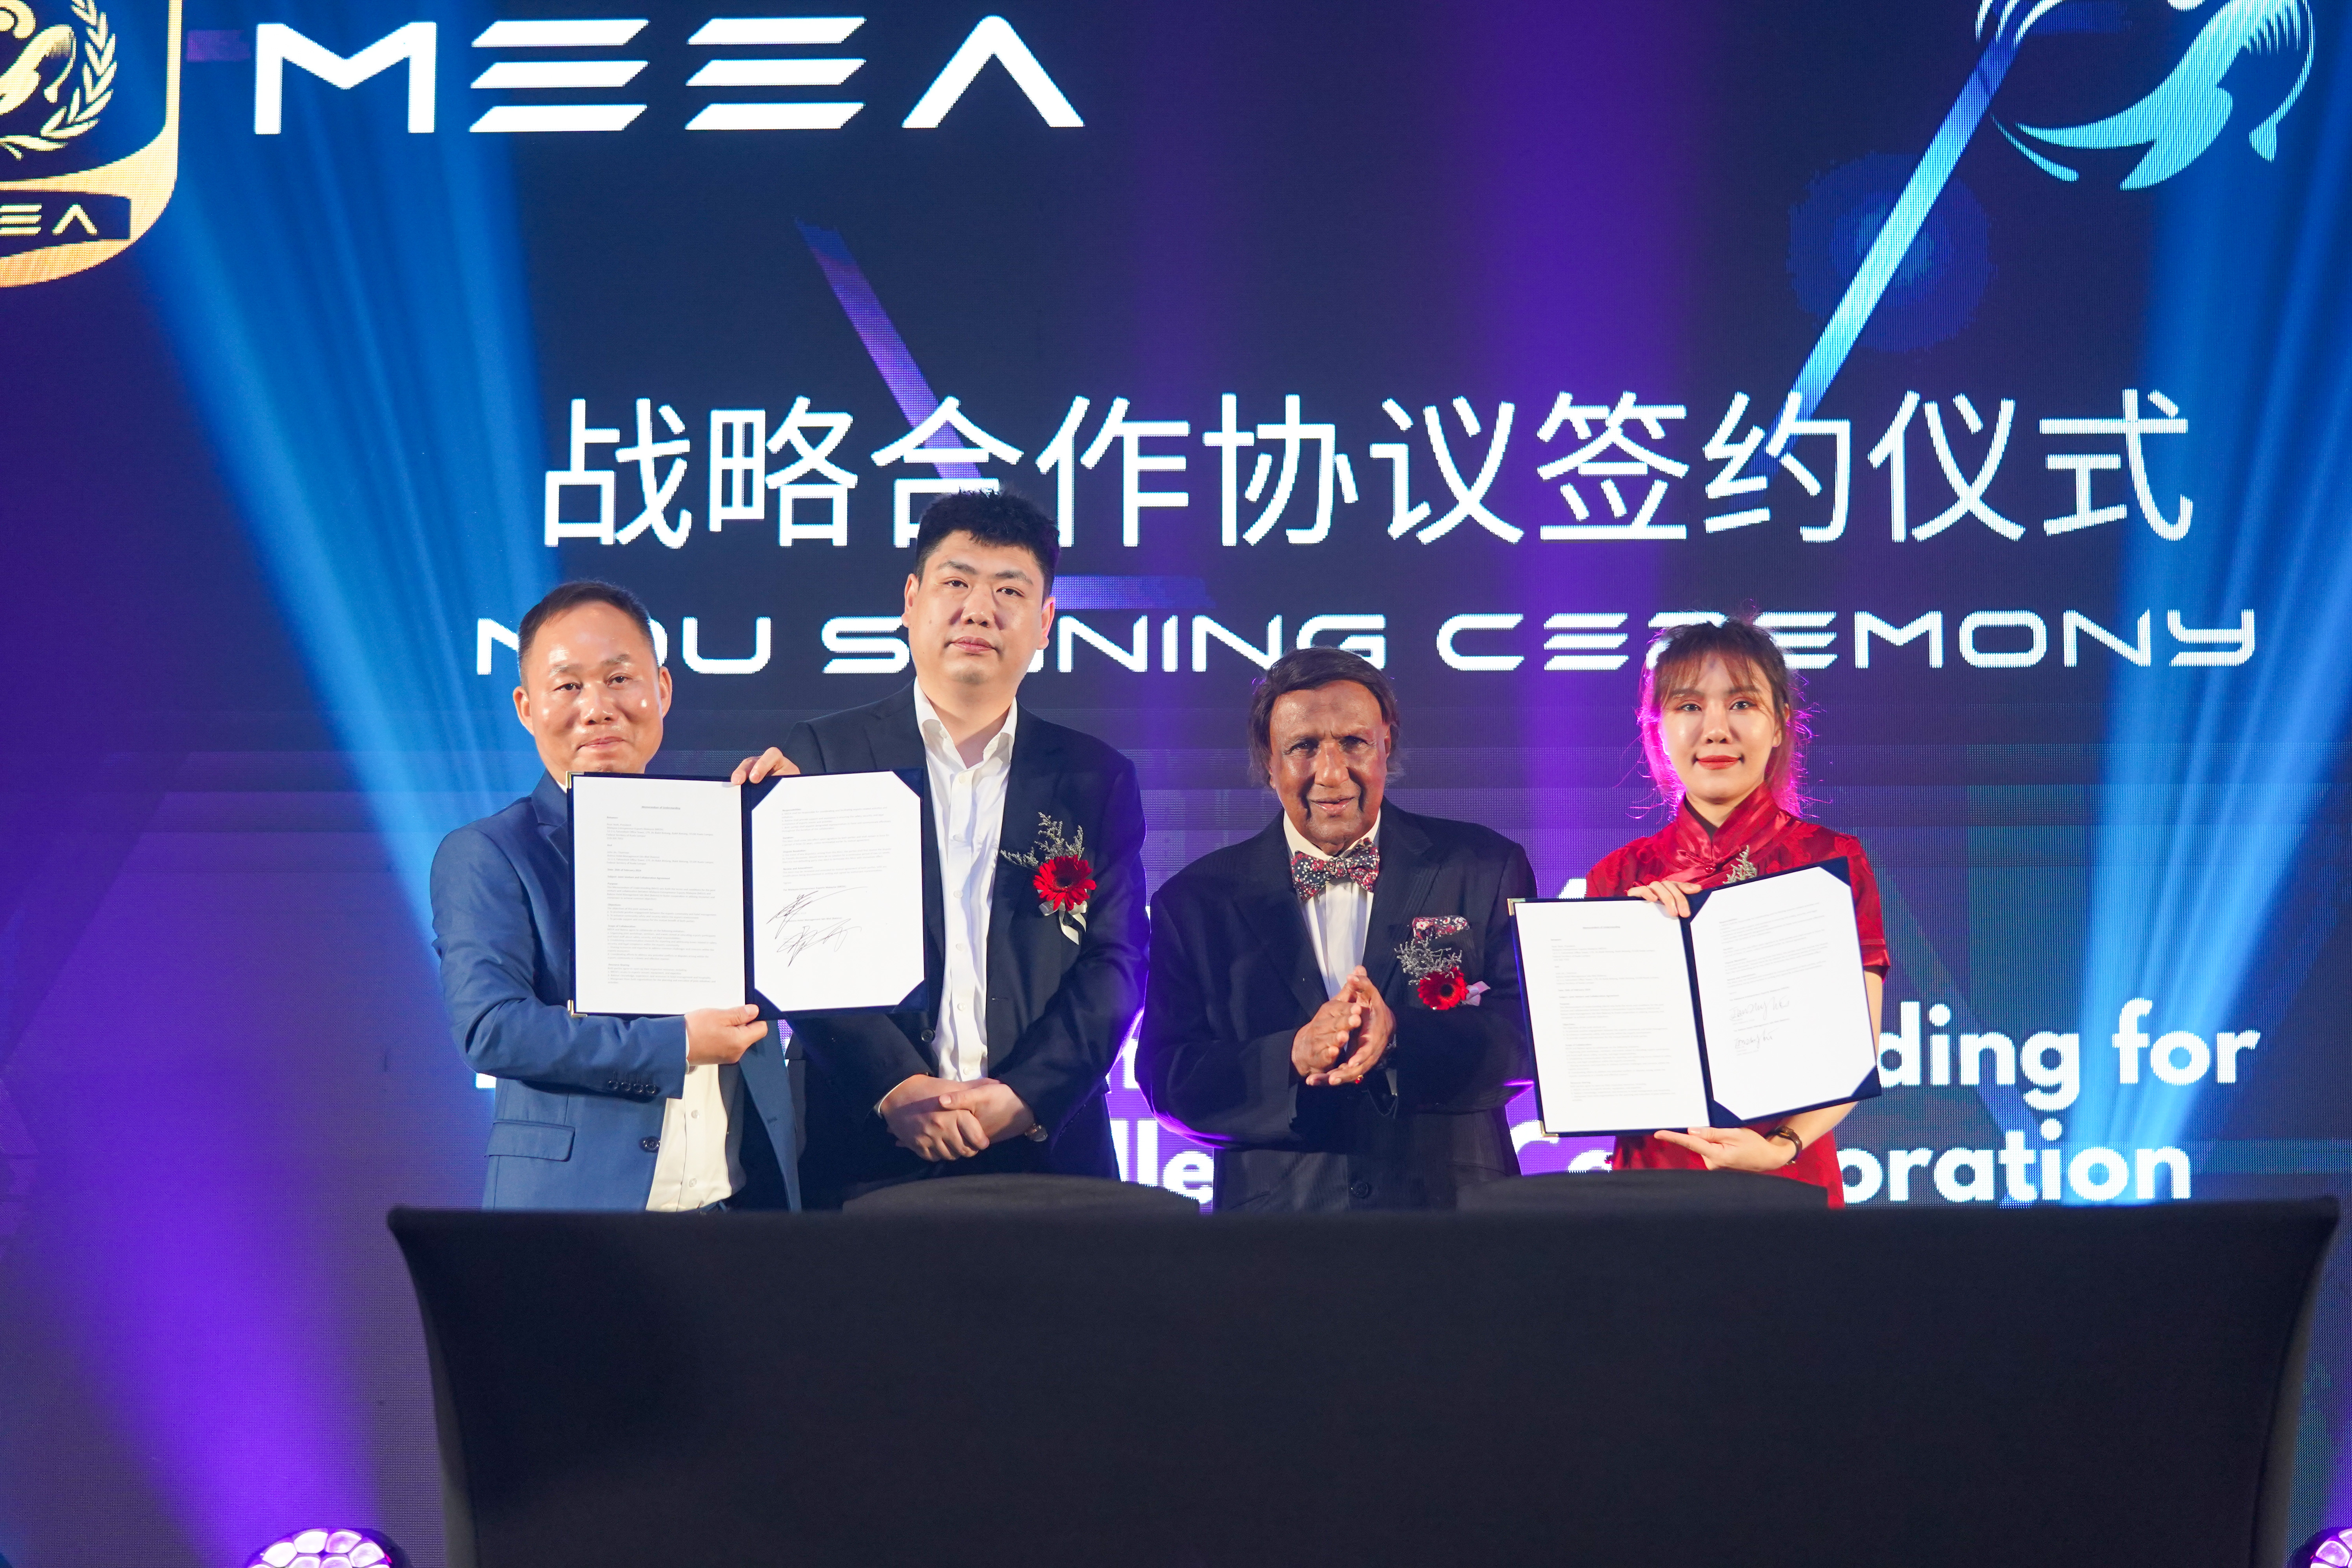 MEEA, Tencent China jalin kerjasama jadikan Malaysia hab e-sukan